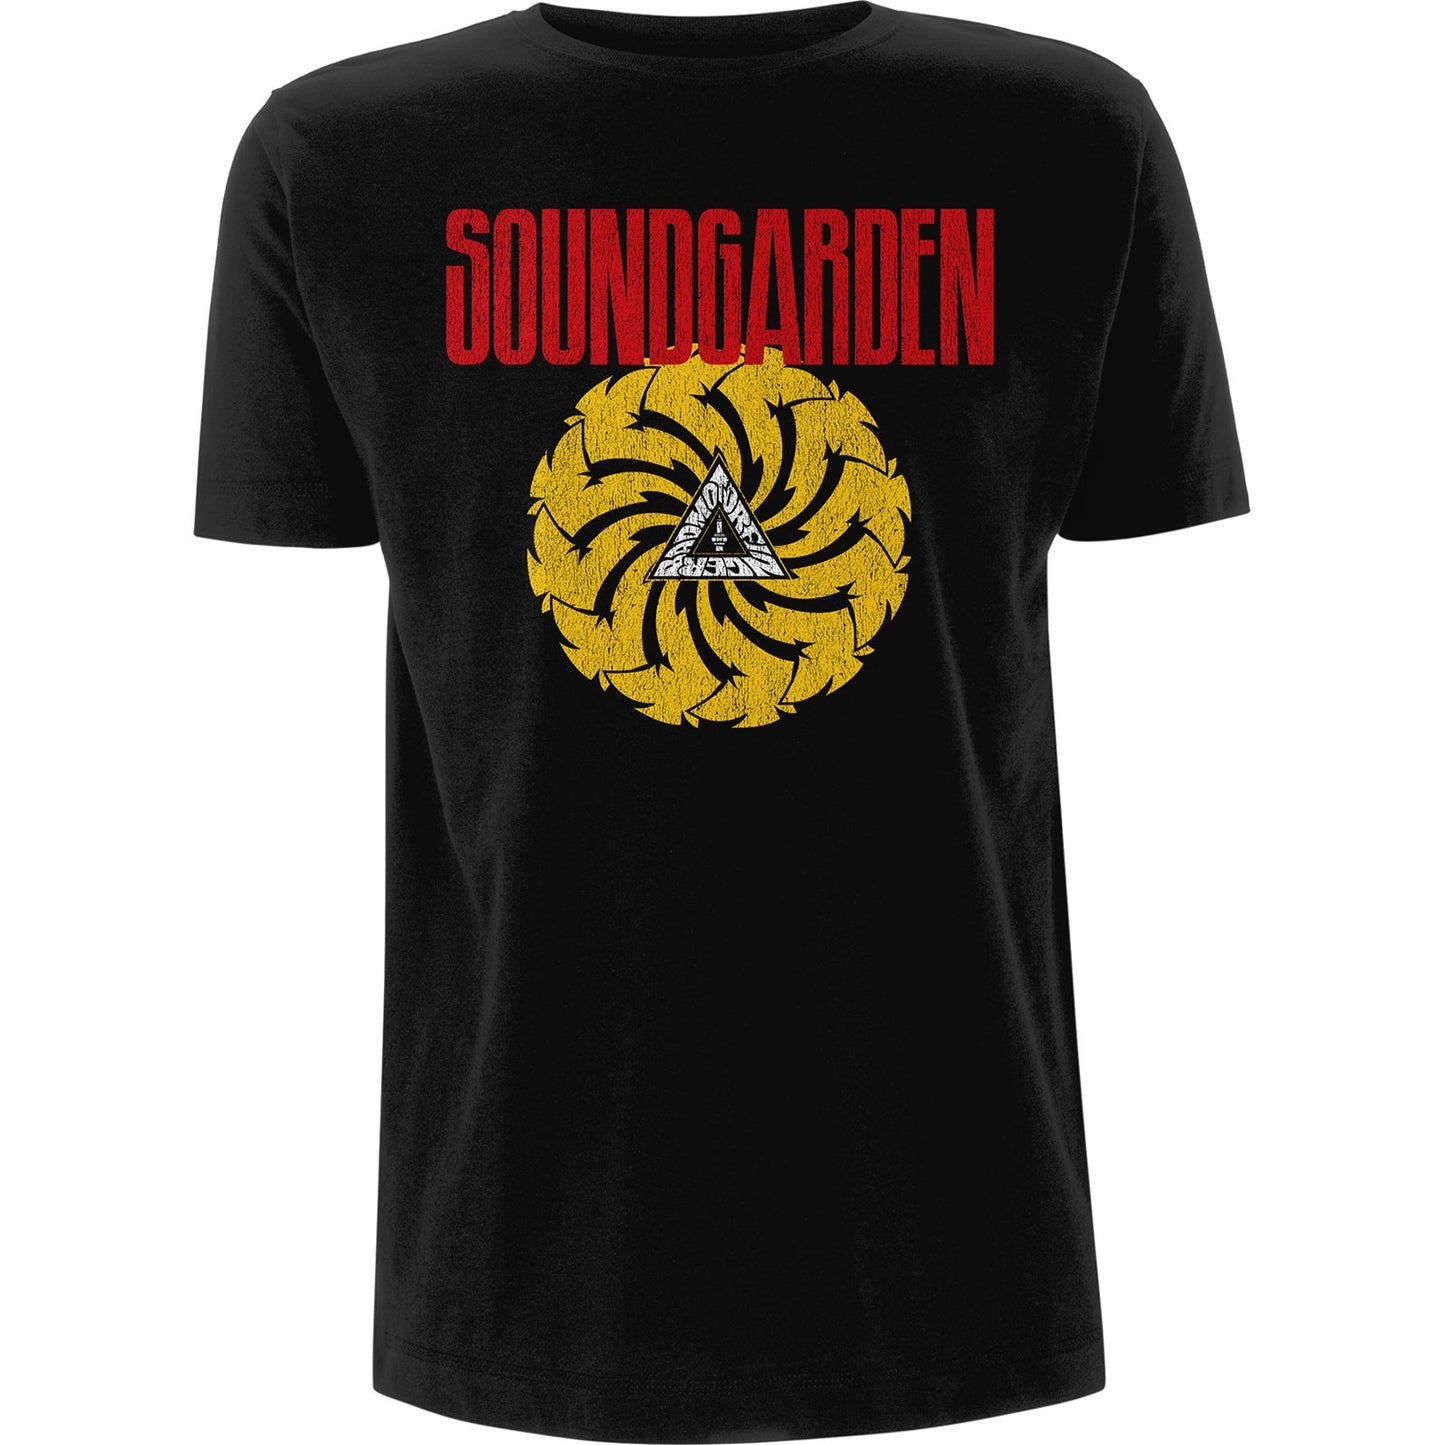 SOUNDGARDEN - Badmotofinger V. 3 T-Shirt